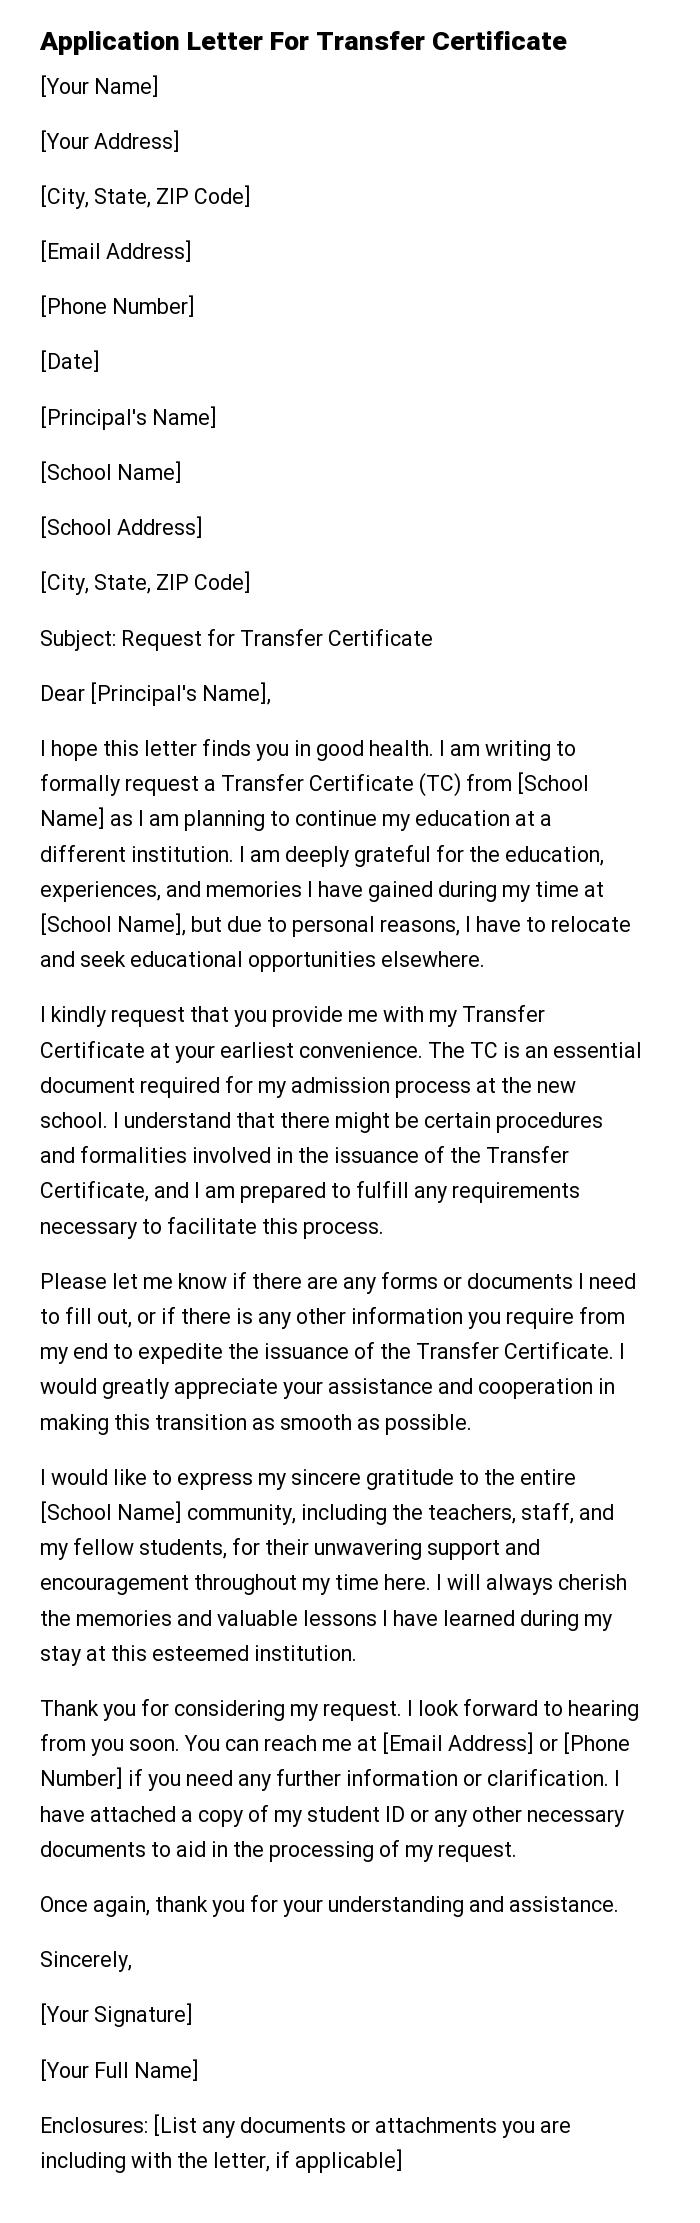 Application Letter For Transfer Certificate